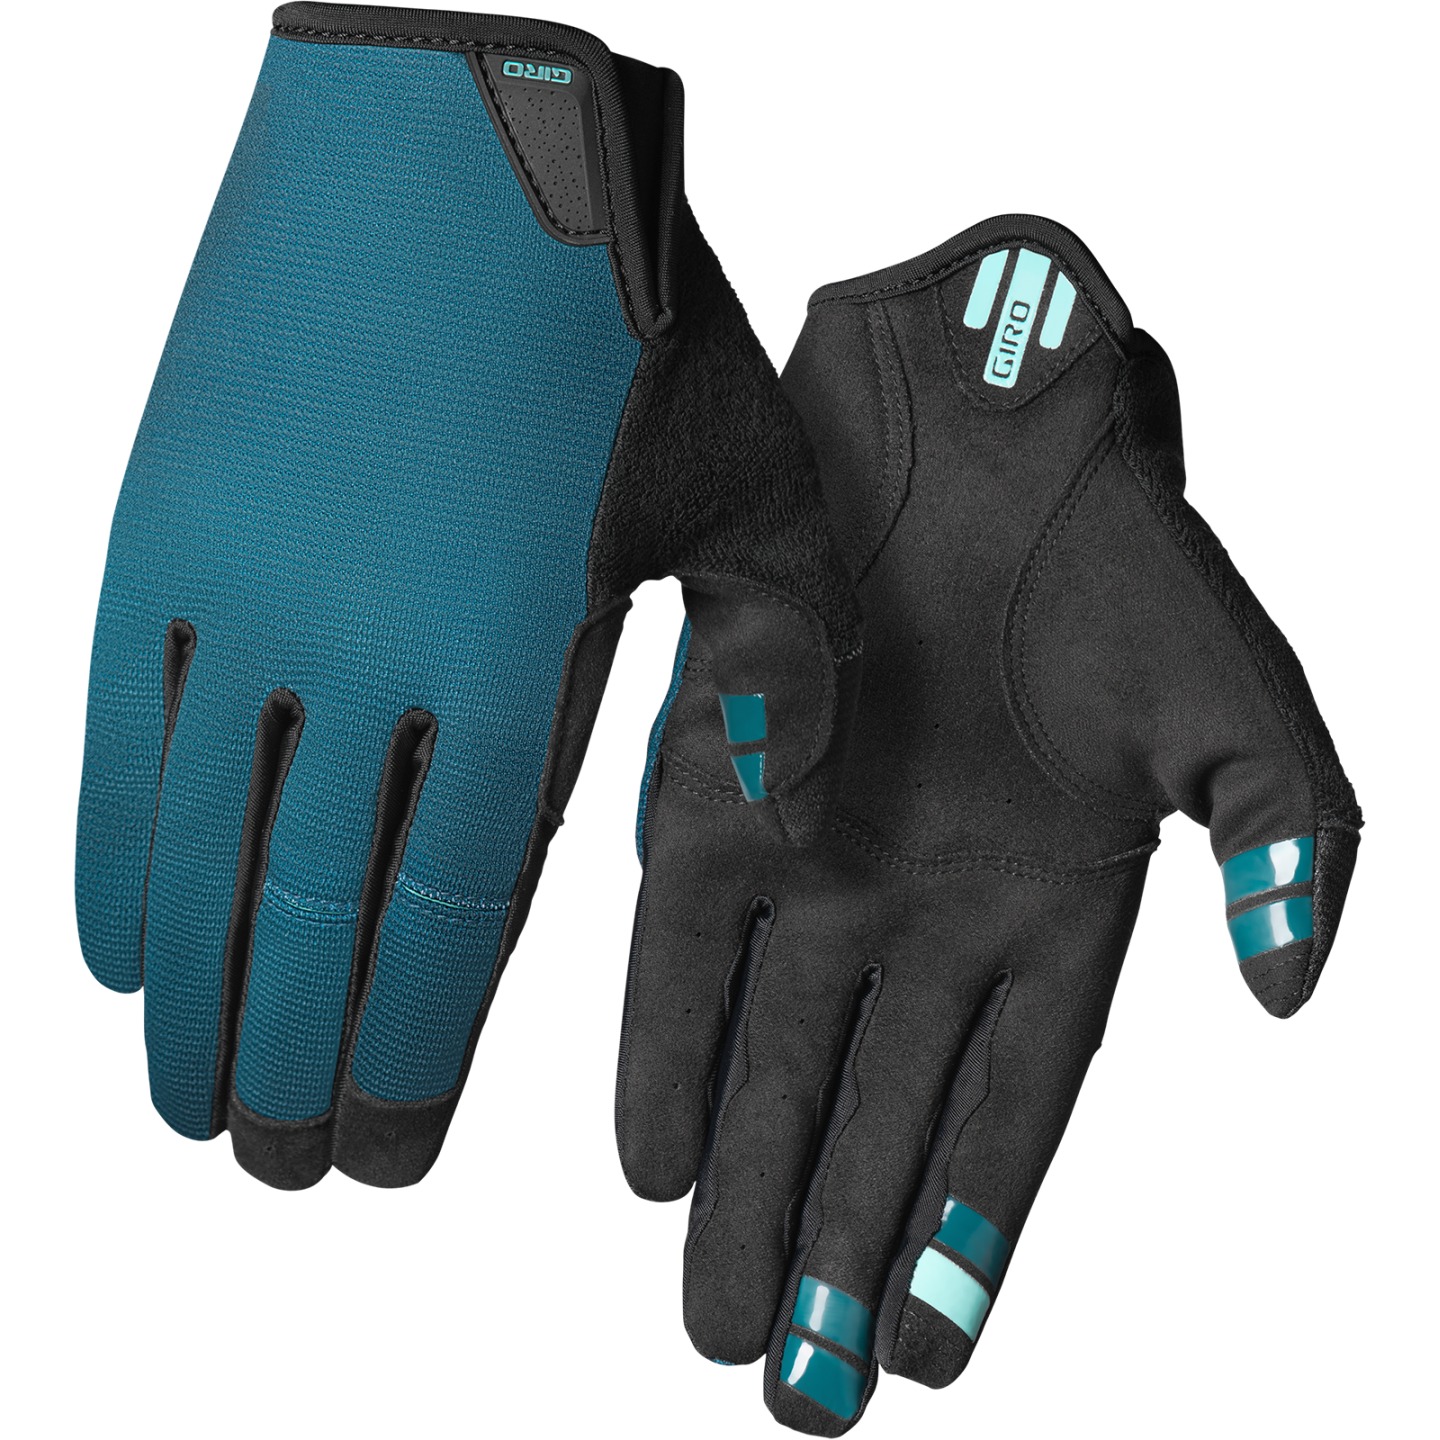 Productfoto van Giro La DND Handschoenen Dames - harbor blue/screaming teal